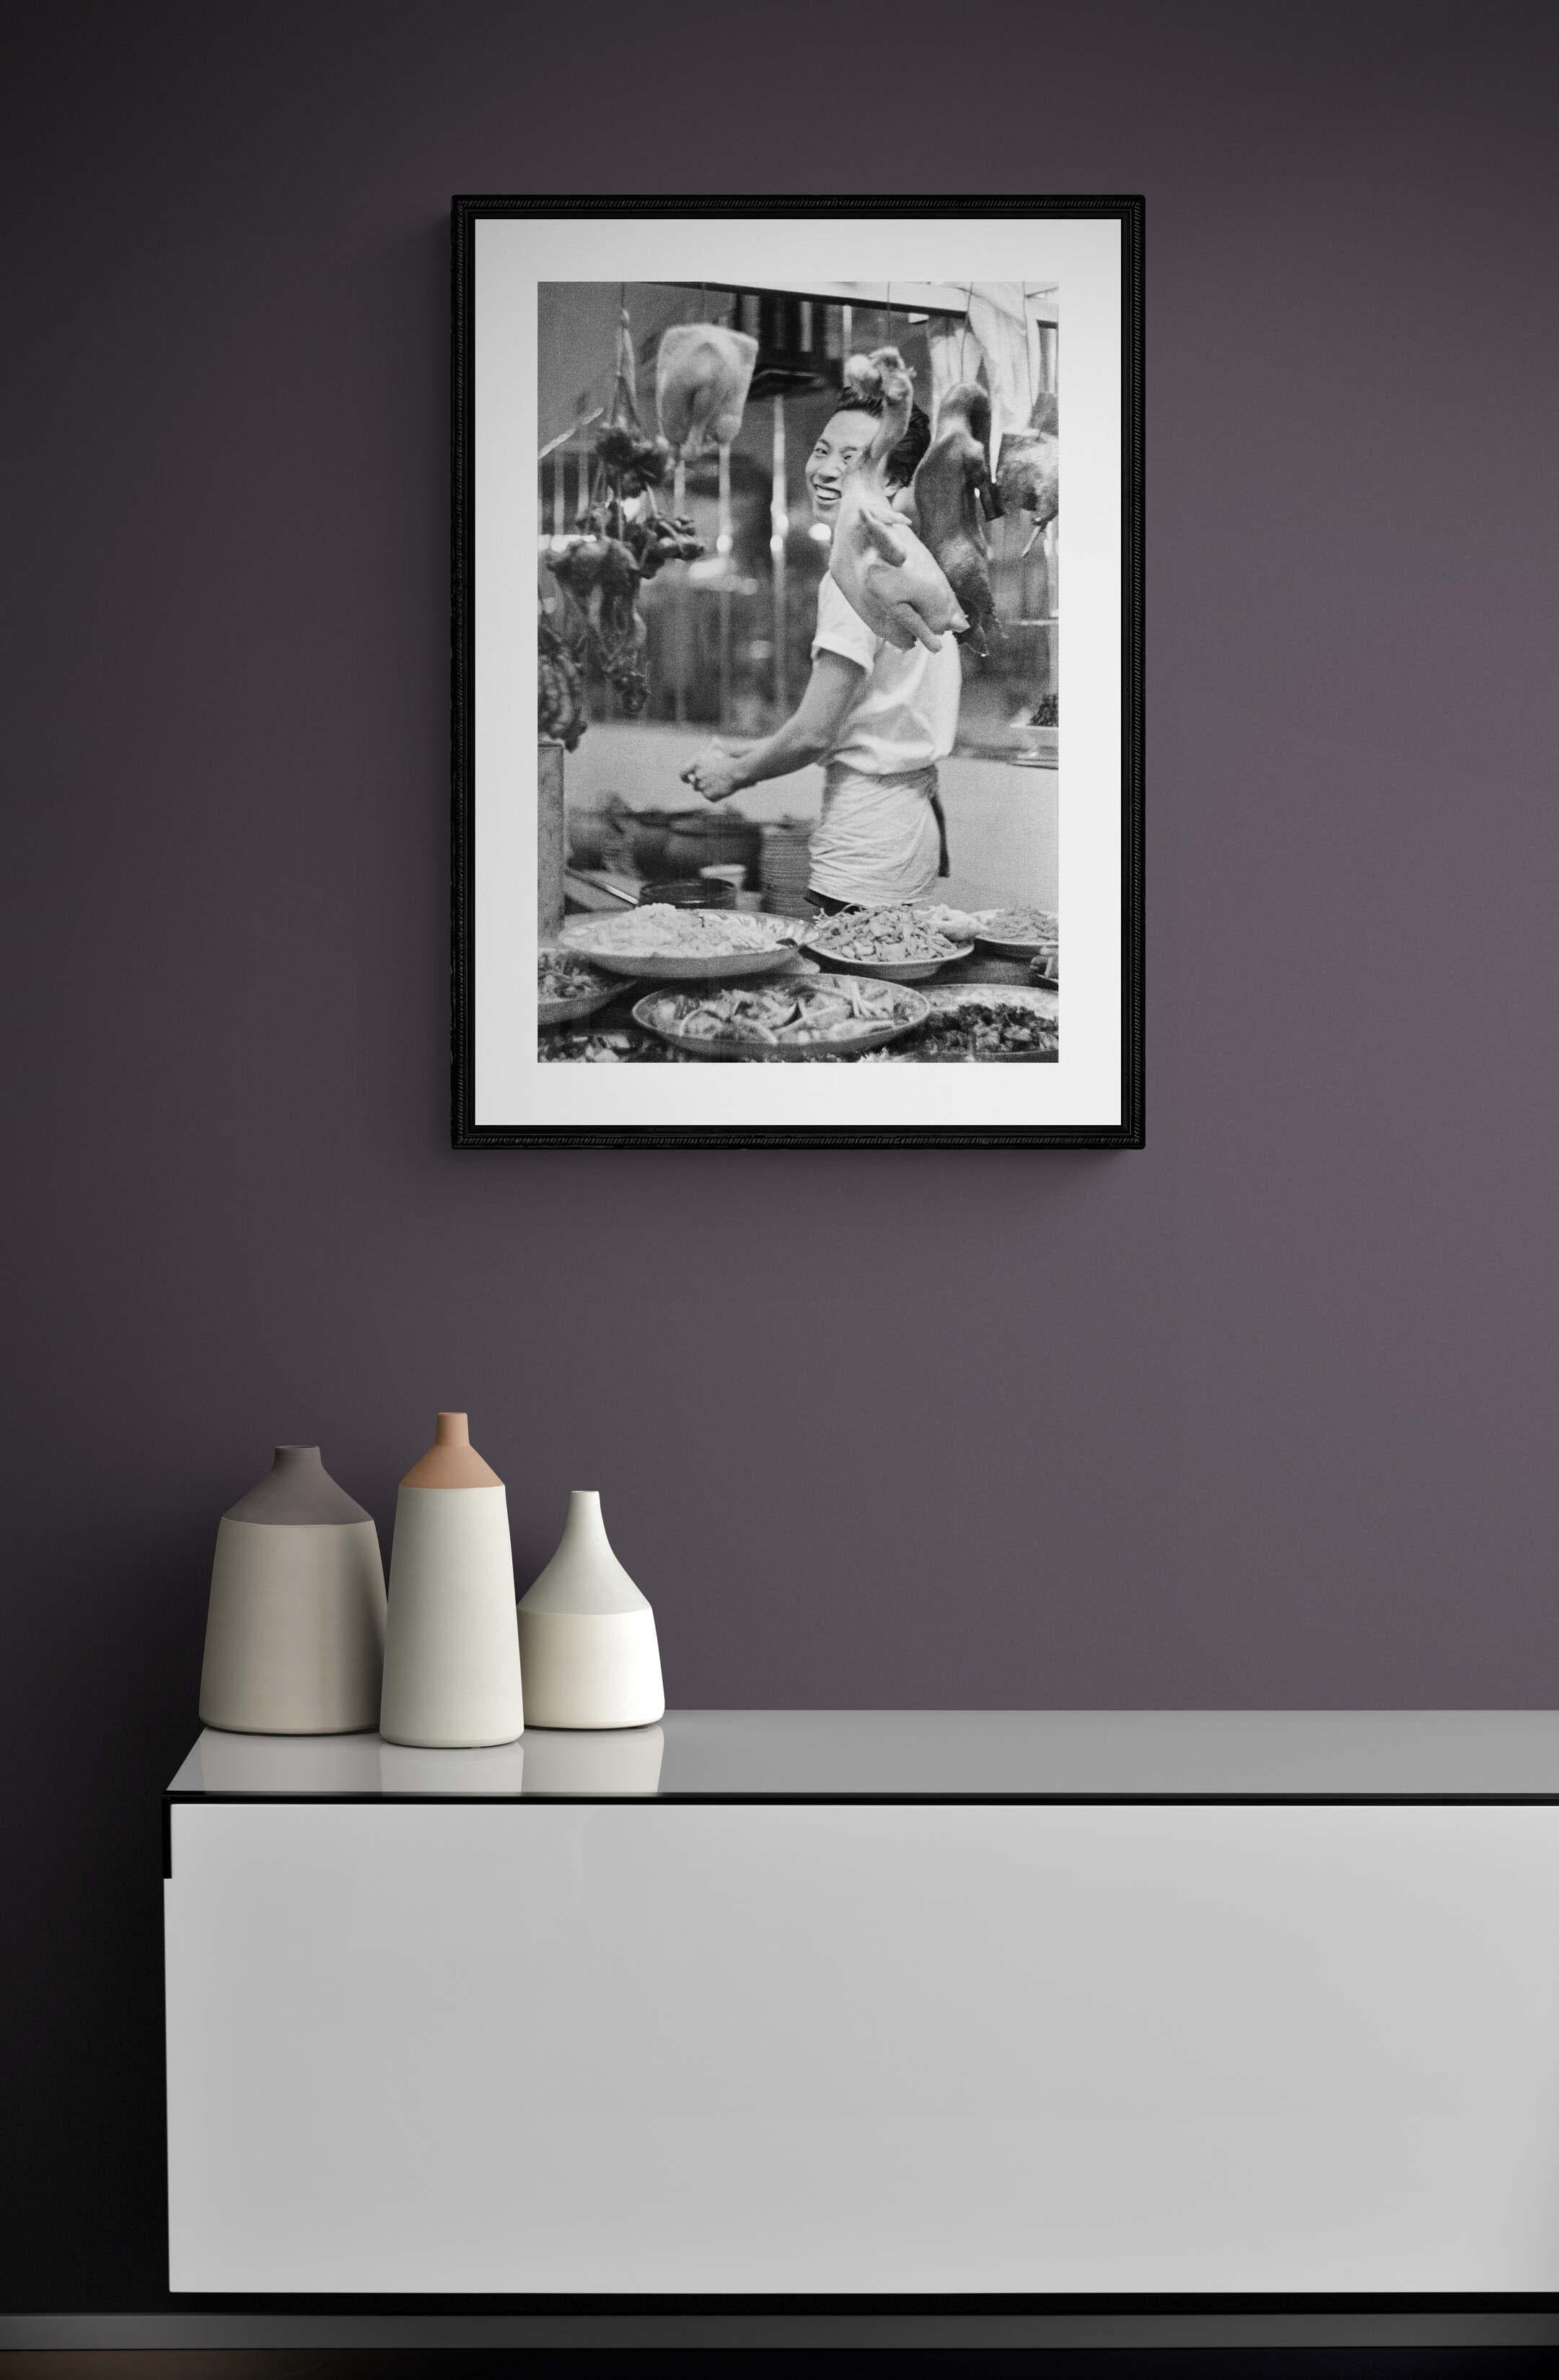 Il cuoco felice - Thailand 1959 - Großformatiger Schwarz-Weiß-Kunstdruck (Grau), Black and White Photograph, von Fabrizio La Torre